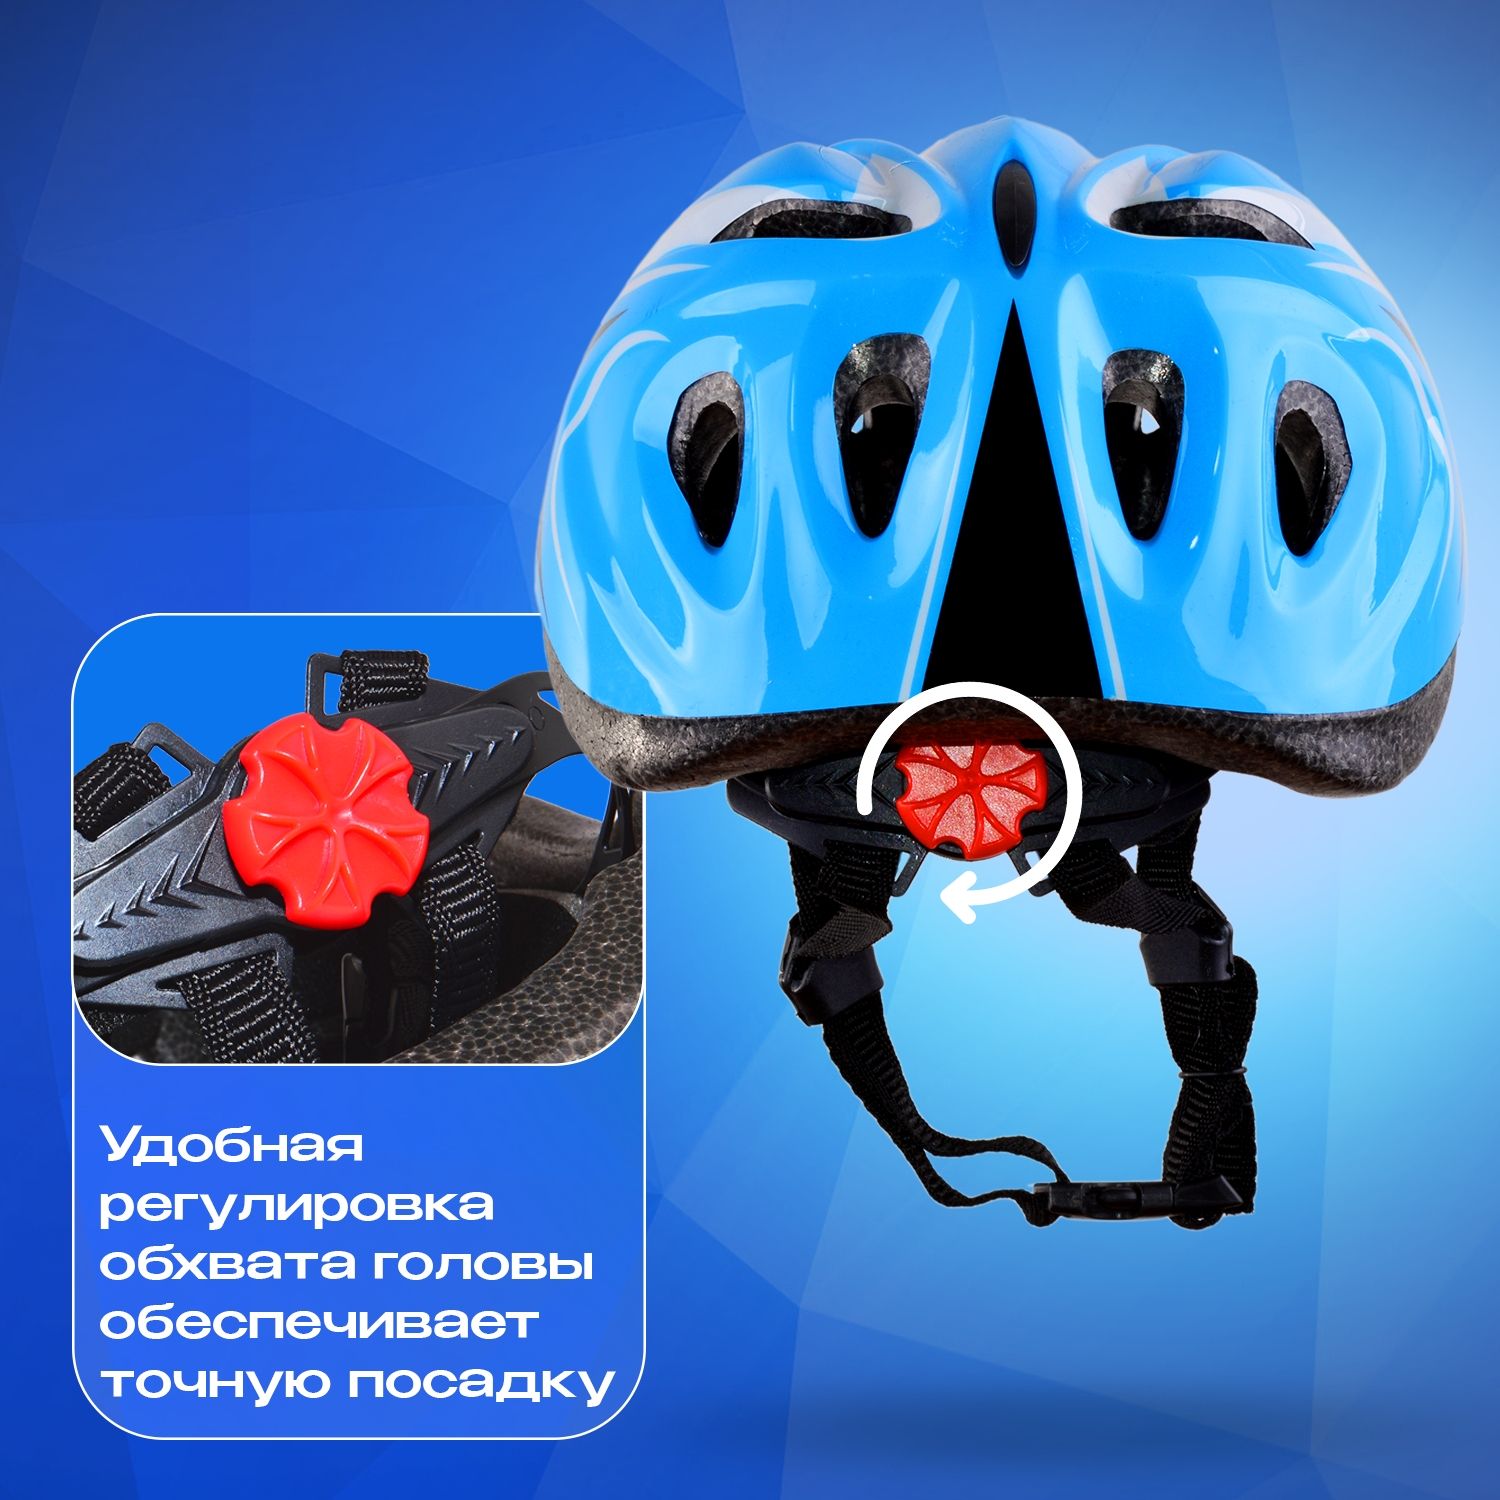 Шлем детский RGX AC-WX-A13 Blue с руглировкой размера 50 - 57 см - фото 2